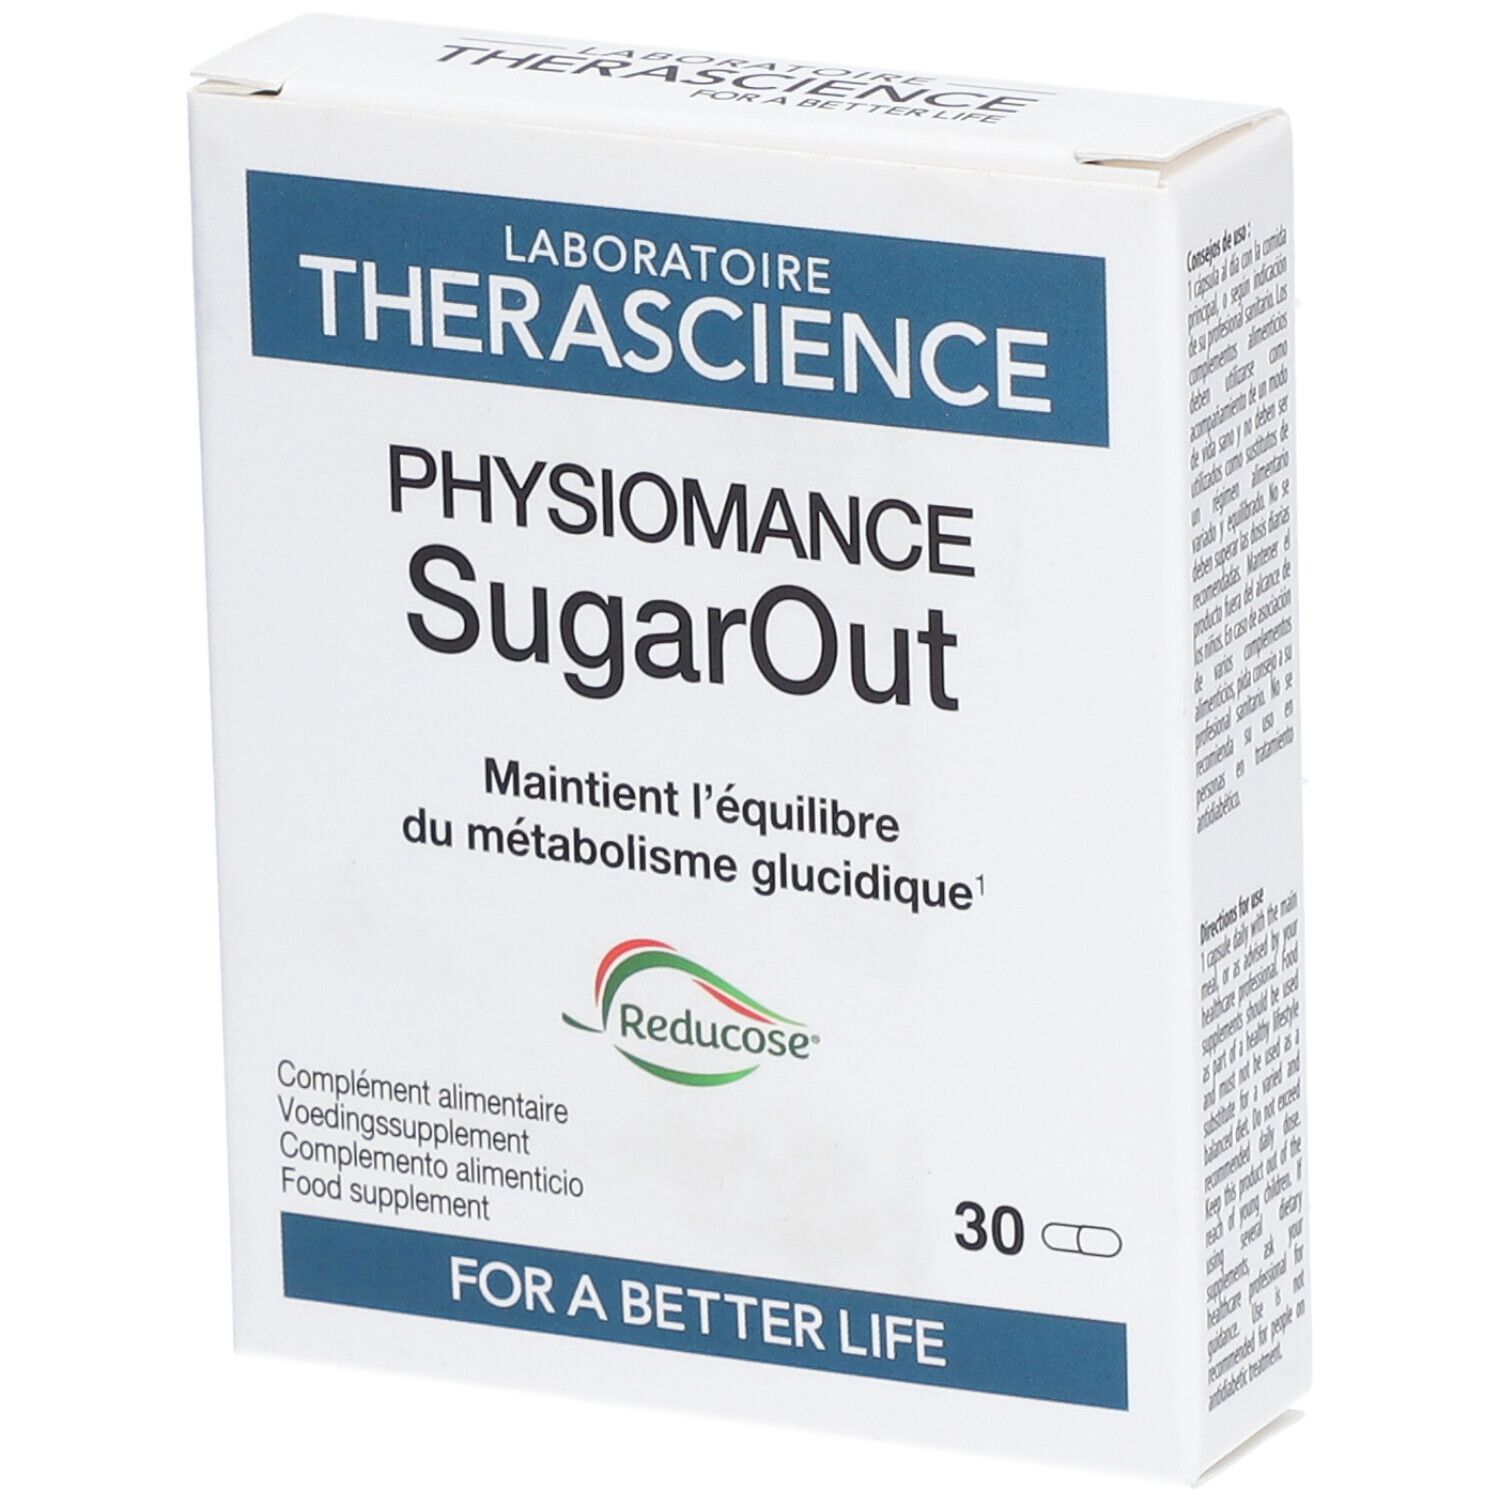 Physiomance SugarOut